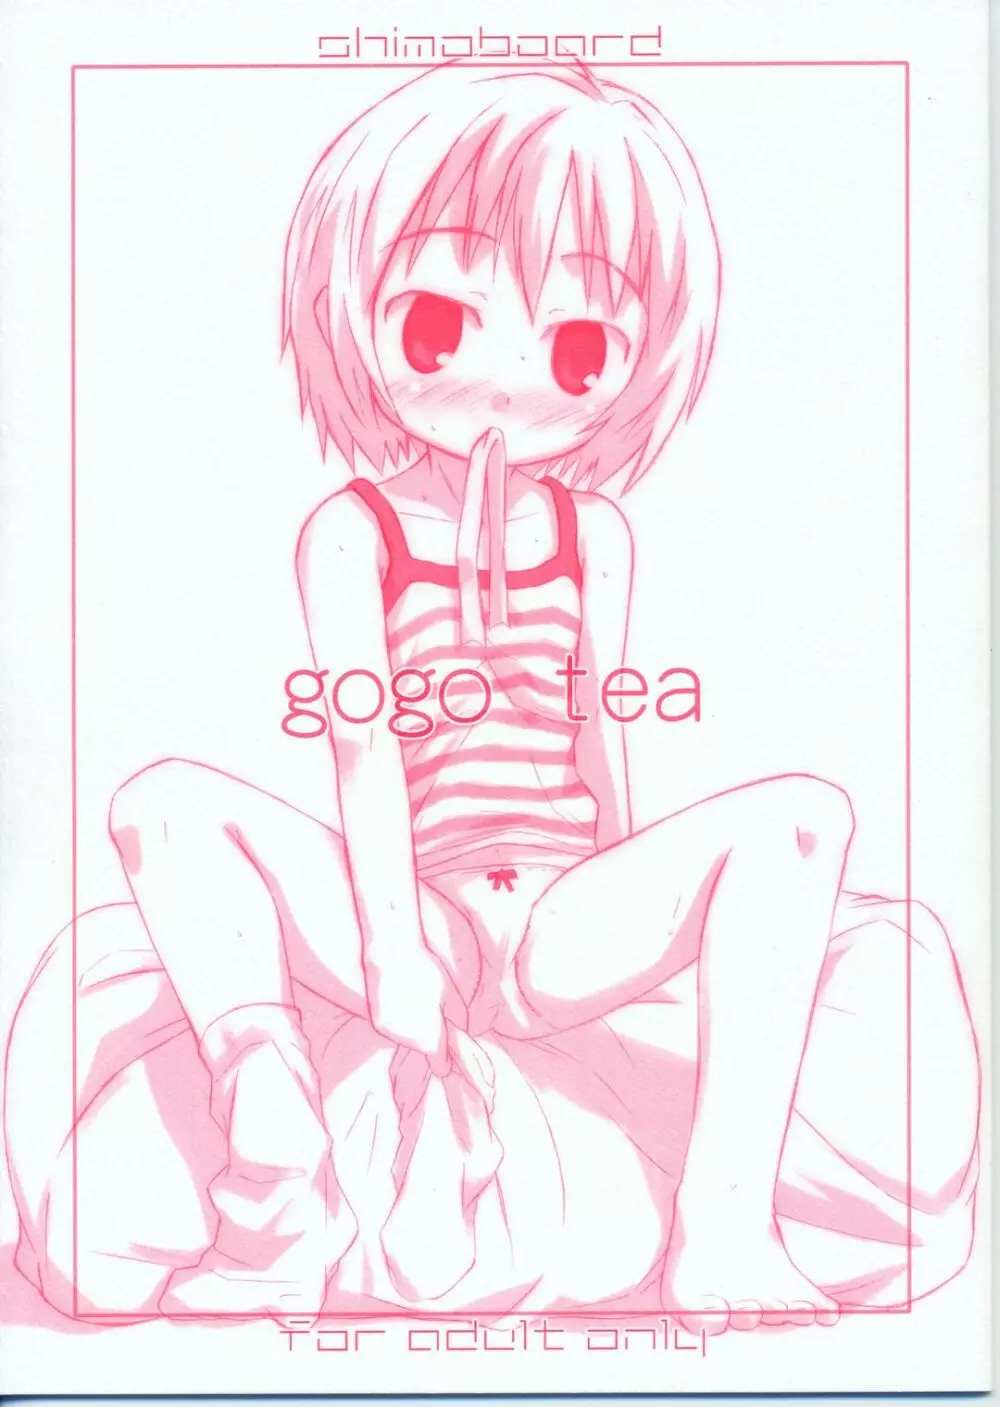 gogo tea